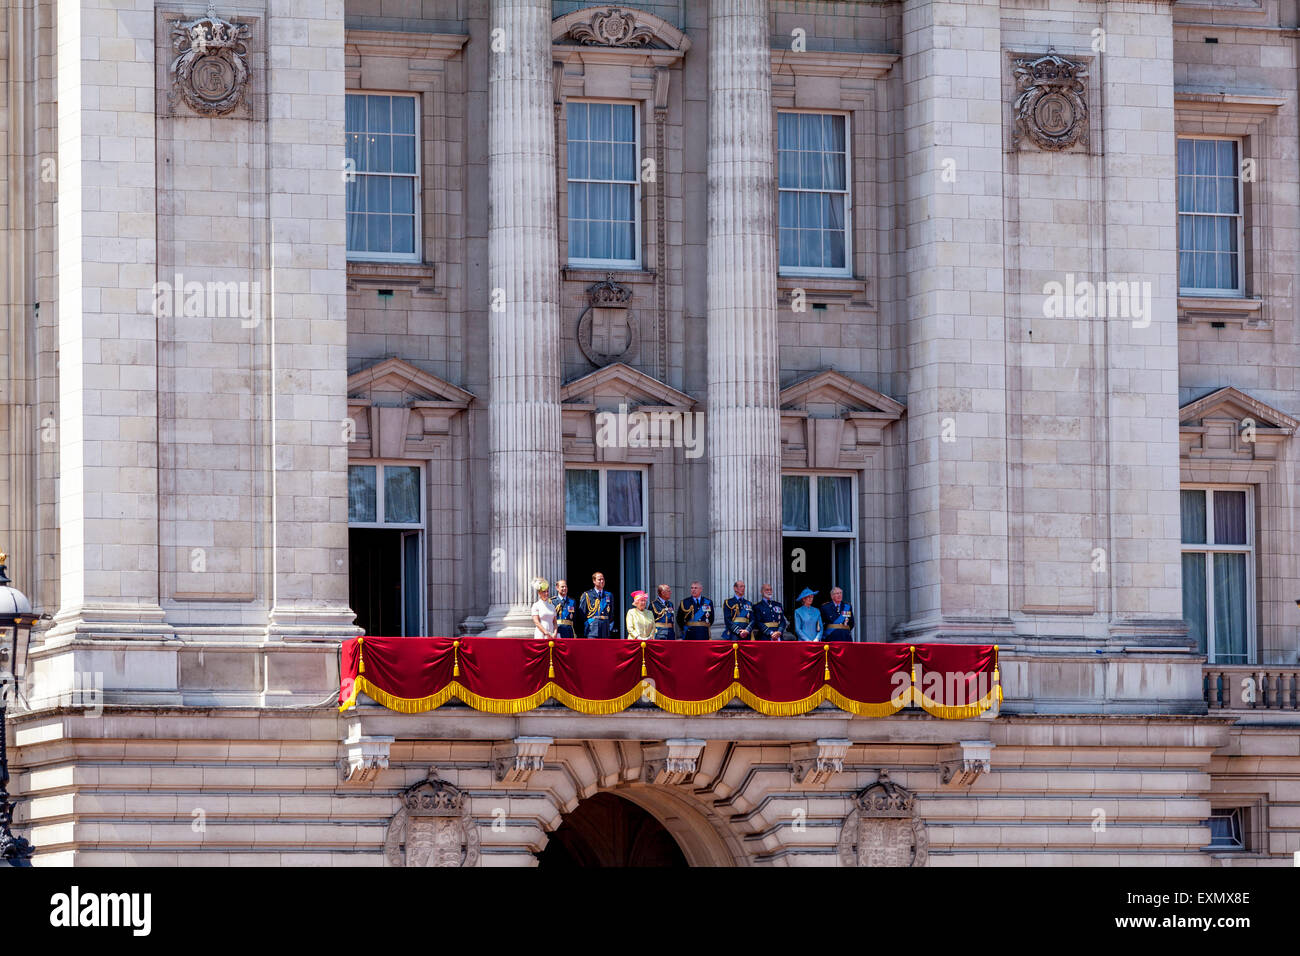 La famille royale britannique debout sur le balcon de Buckingham Palace, Londres, Angleterre Banque D'Images